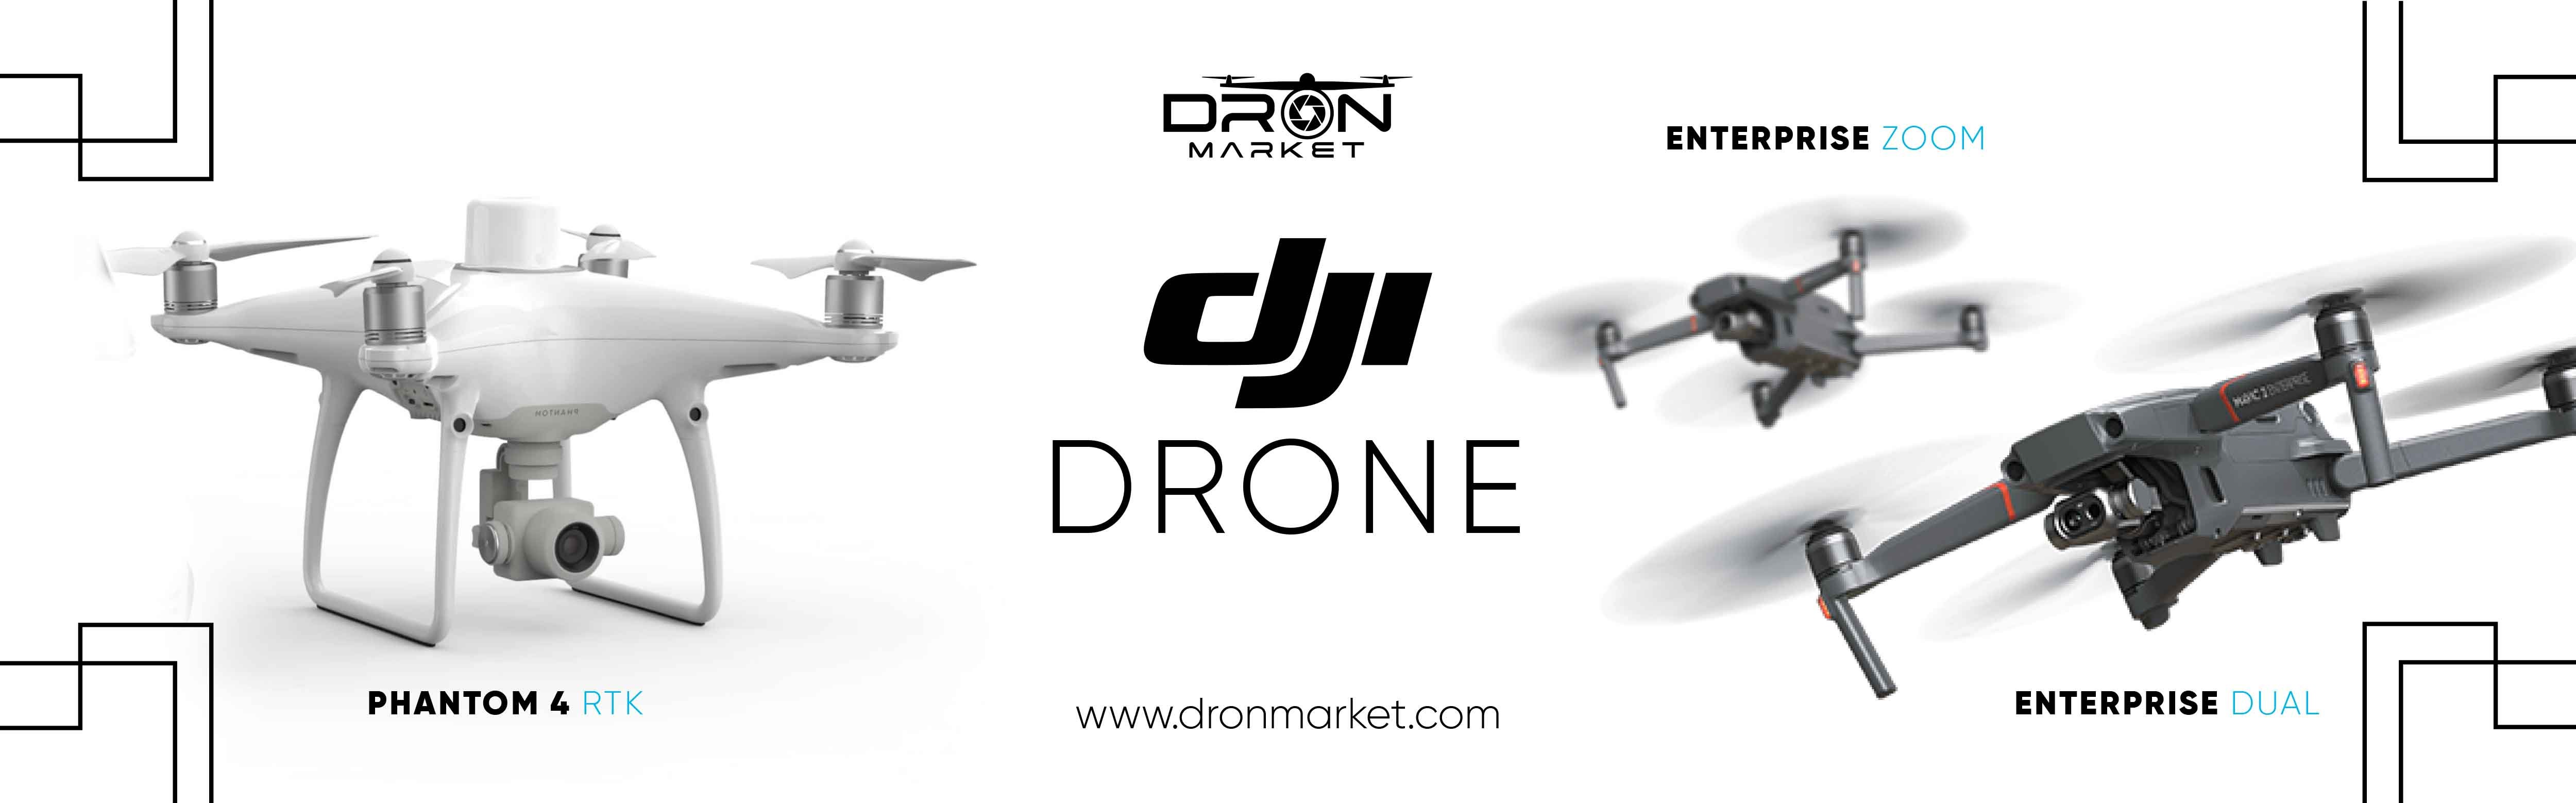 Les modèles de drones DJI vous attendent sur dronmarket.com aux prix les plus abordables.